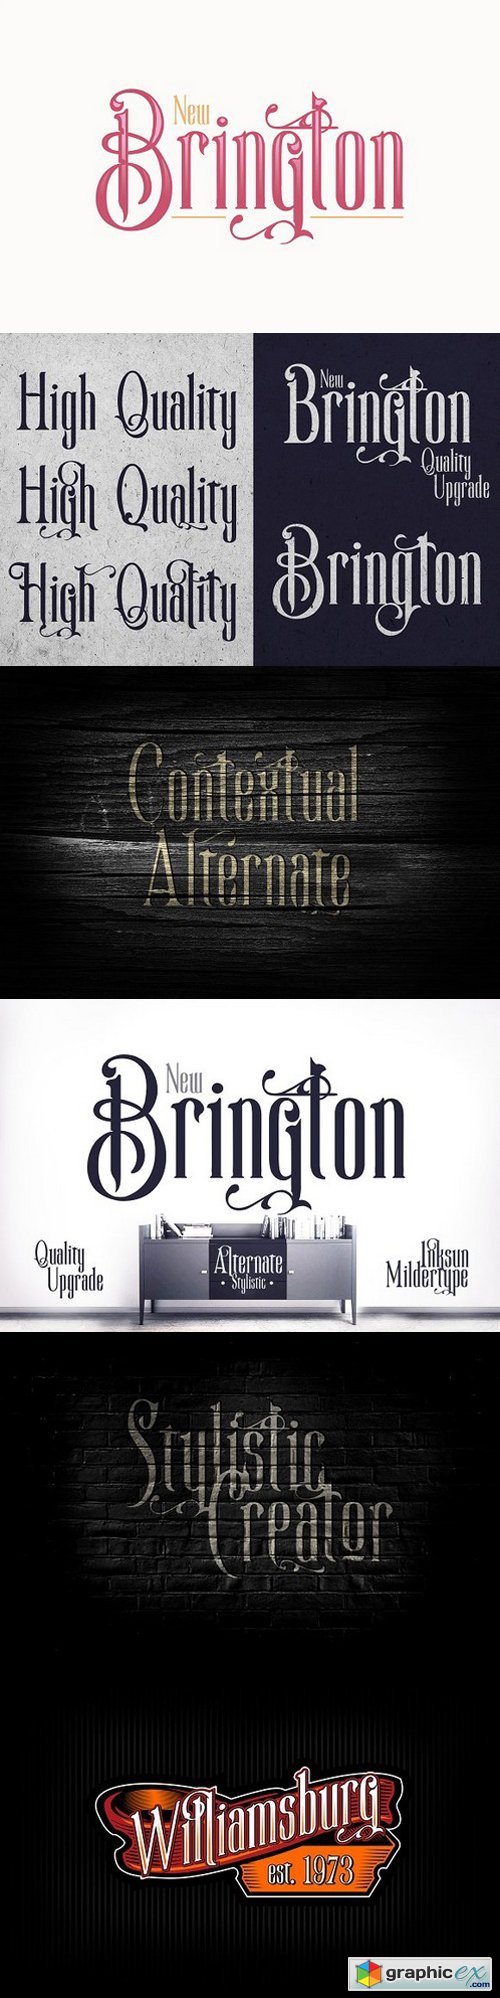 New Brington Serif Font